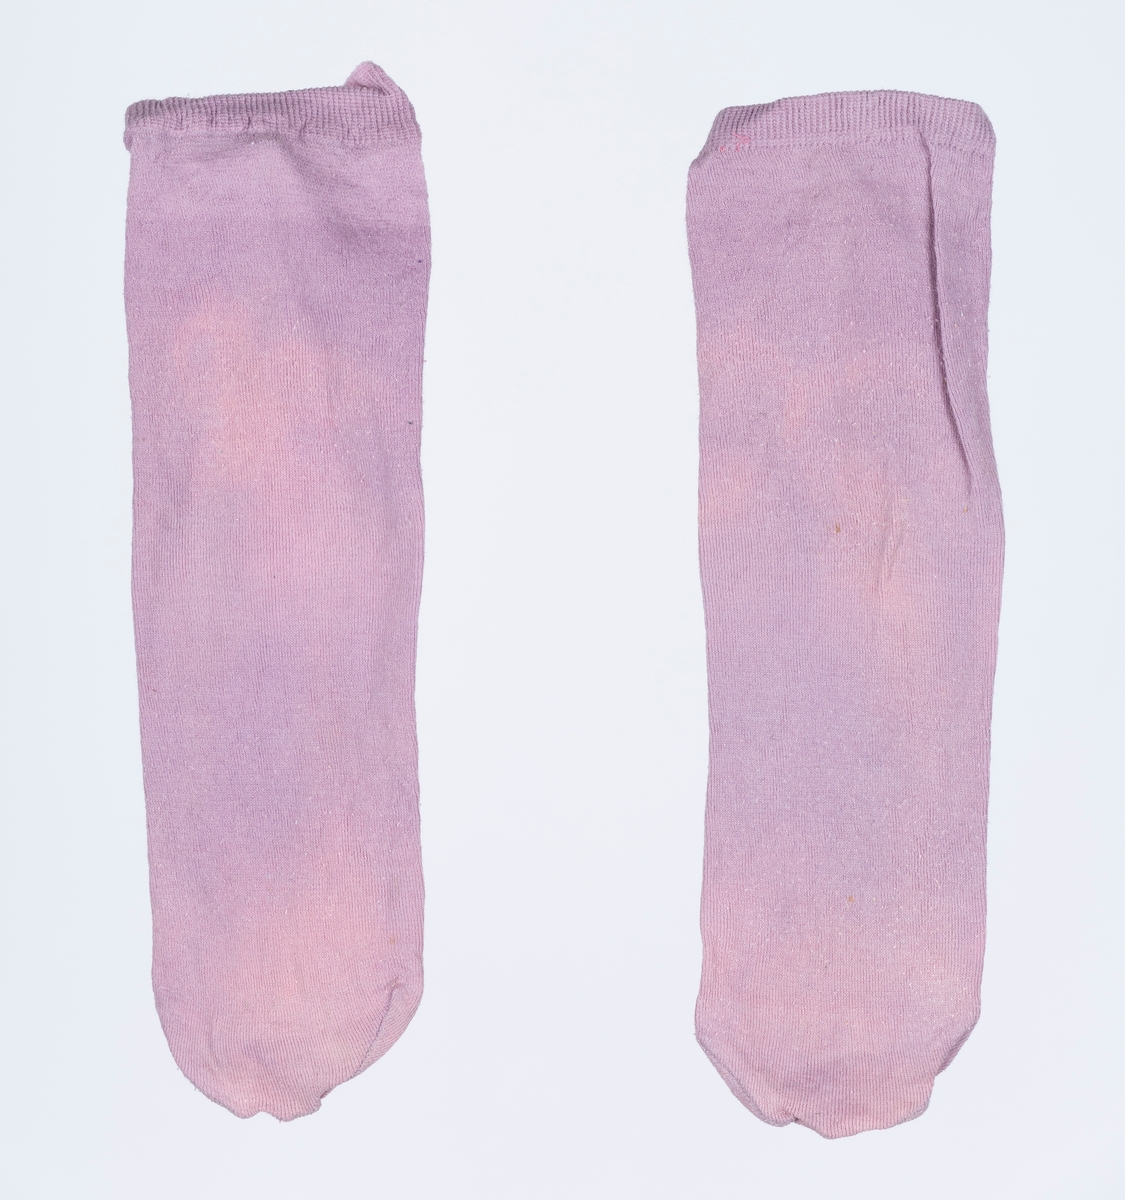 8 par tynne sokker i forskjellige farger.
Ant. brukt